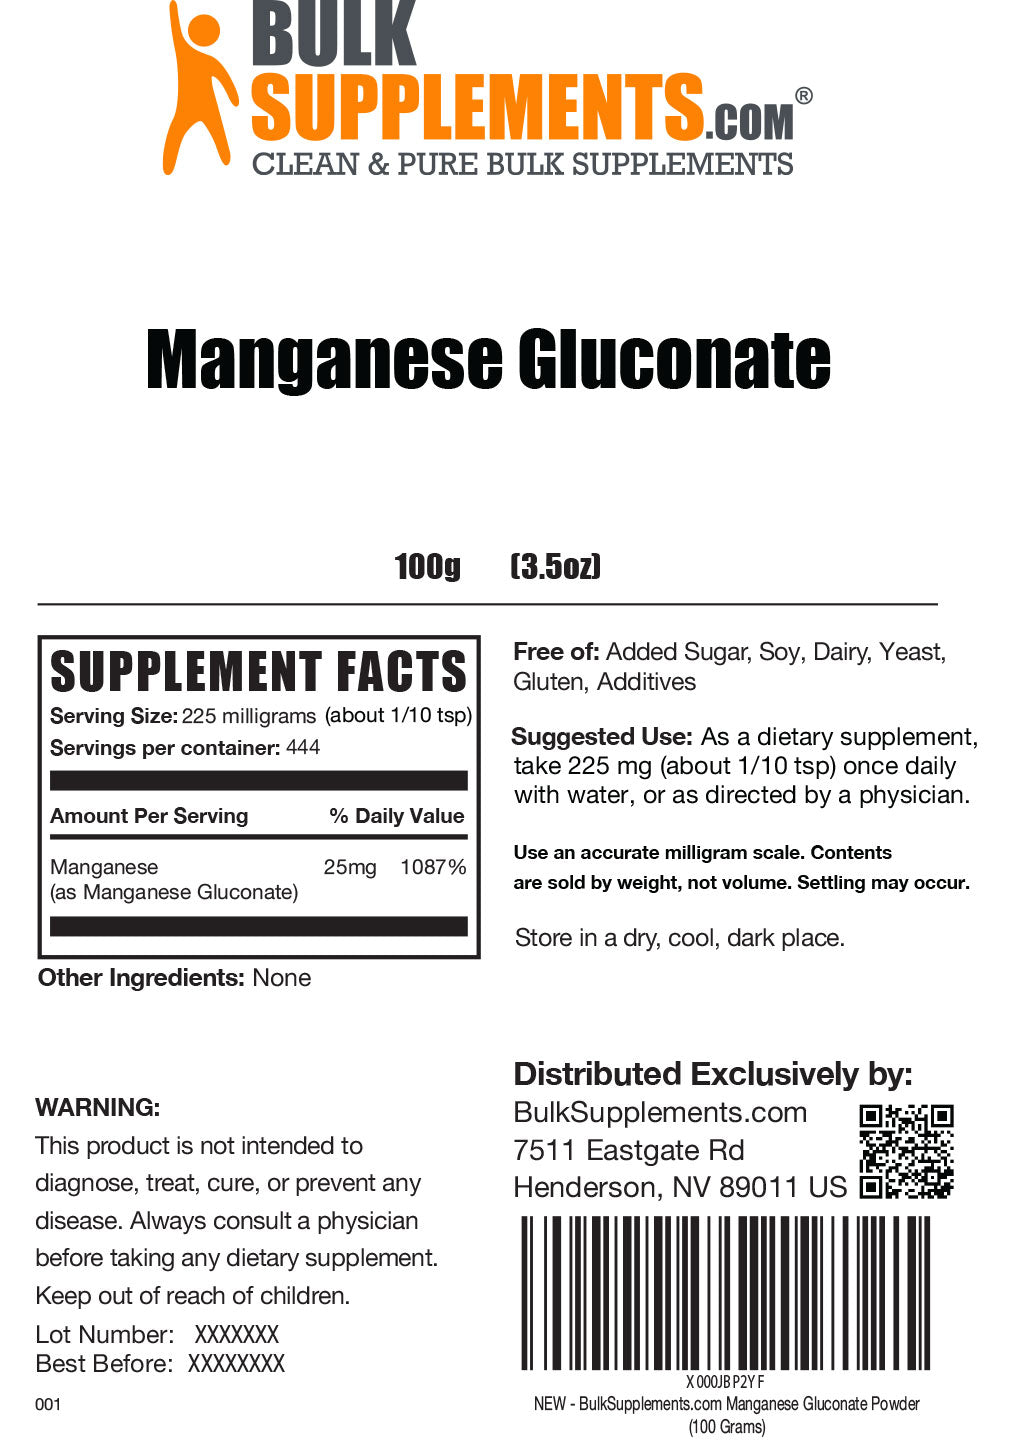 Manganese Gluconate powder label 100g